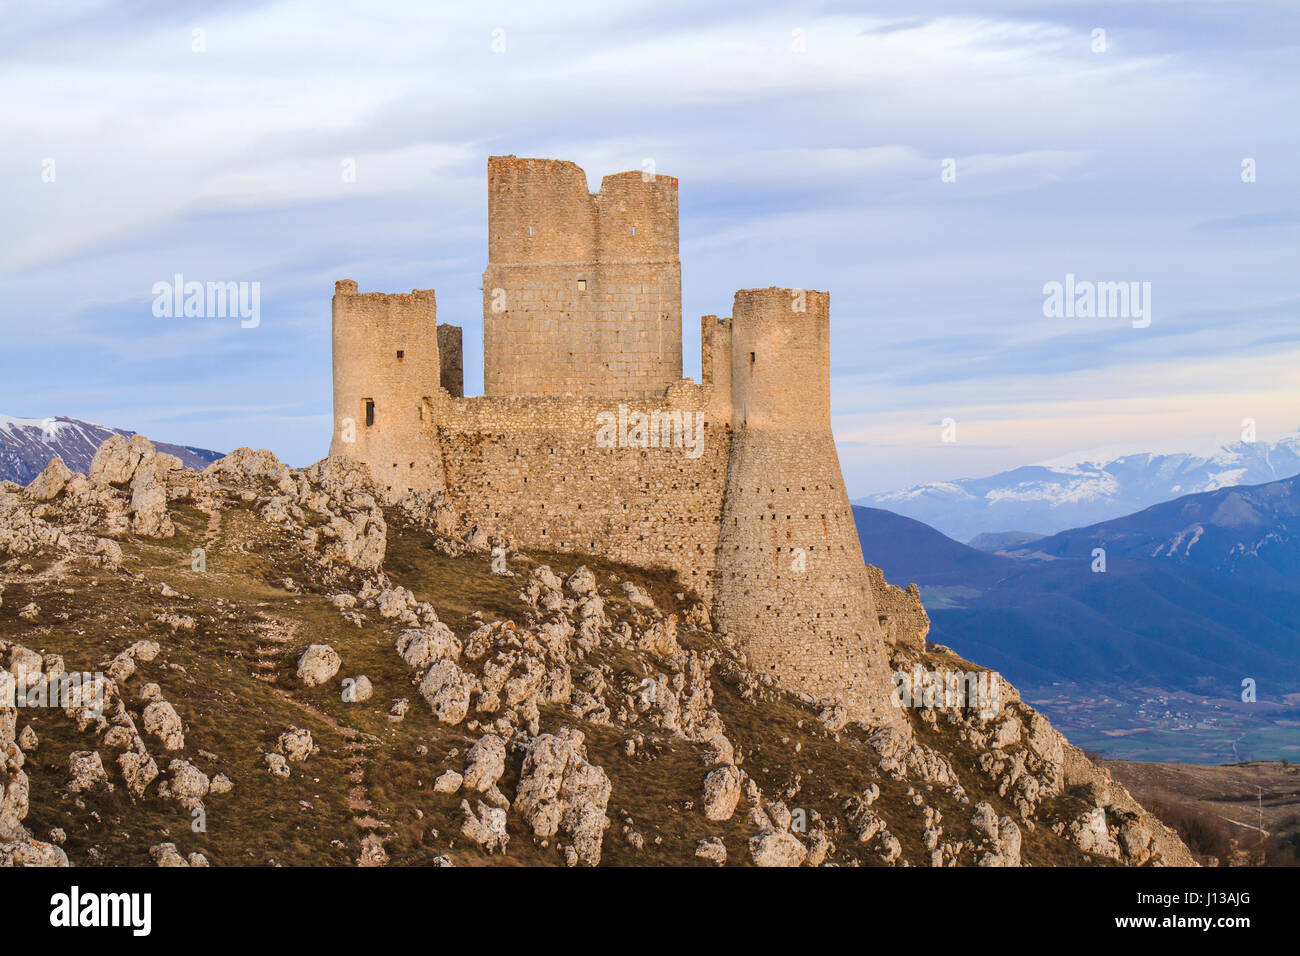 Landscape of Castle Rocca Calascio in Abruzzo in Italy Stock Photo